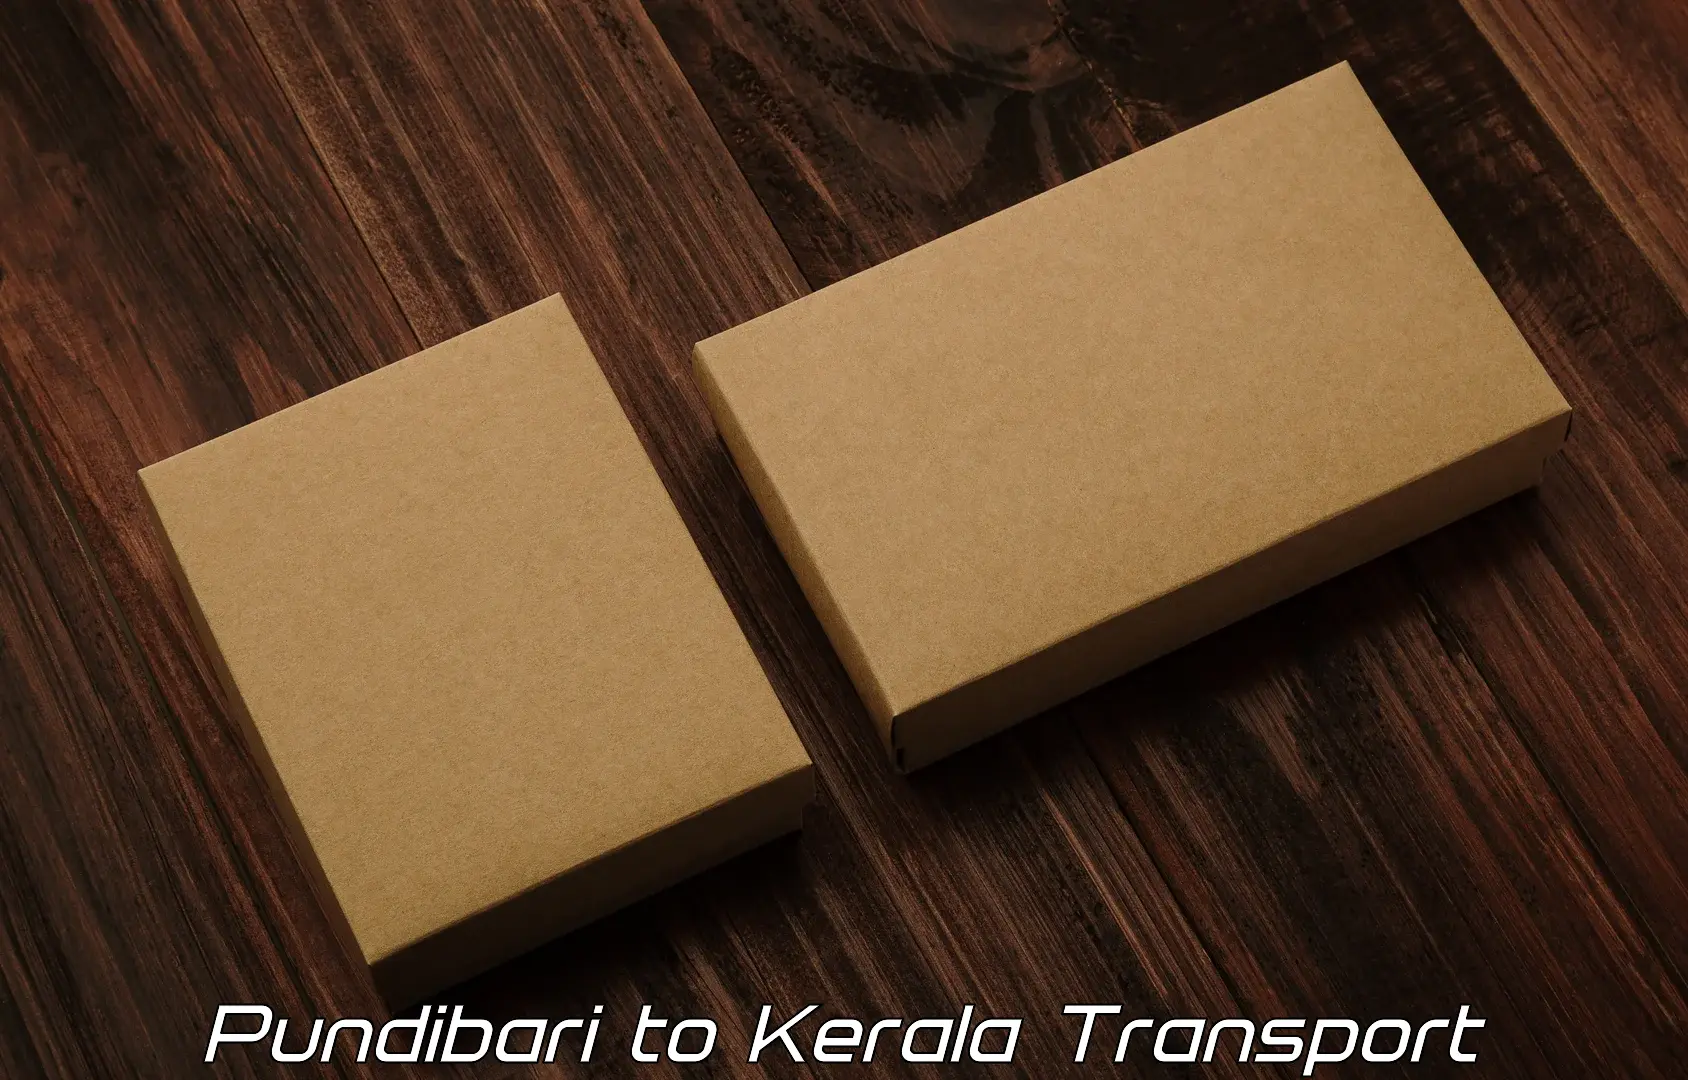 Container transport service Pundibari to Thiruvananthapuram